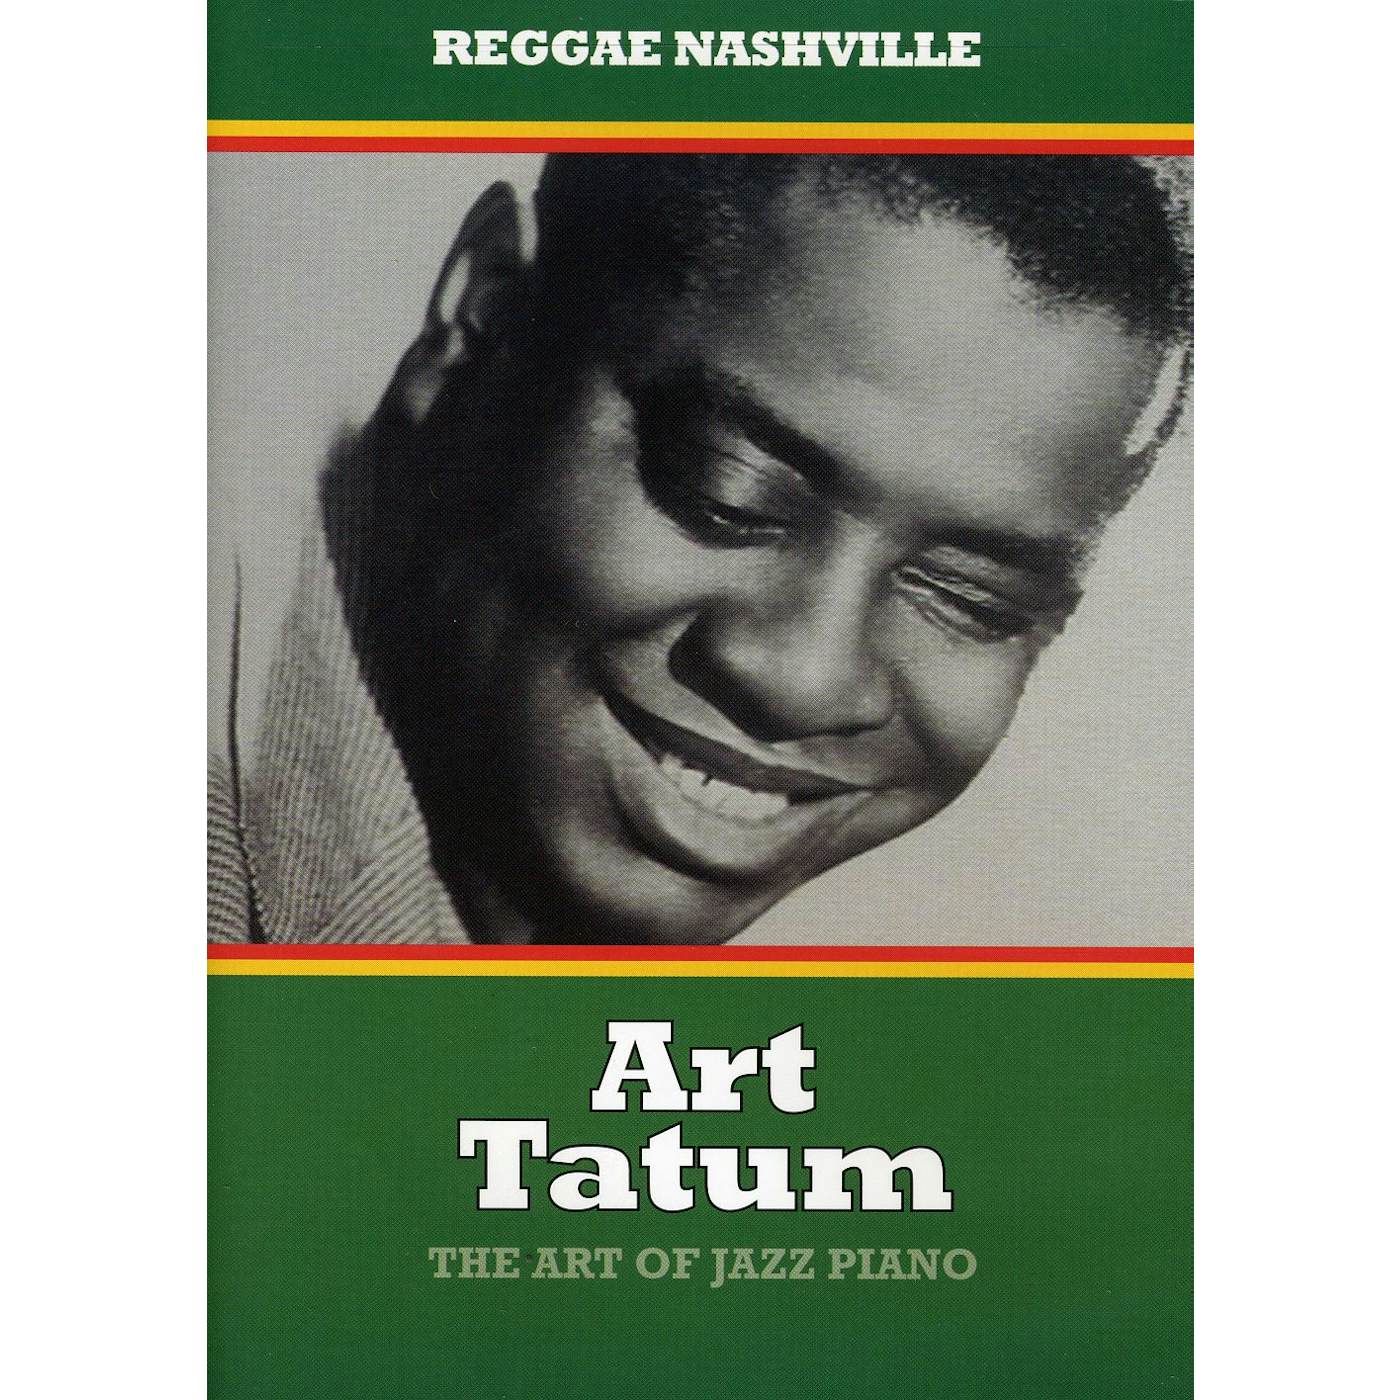 Art Tatum ART OF JAZZ PIANO DVD